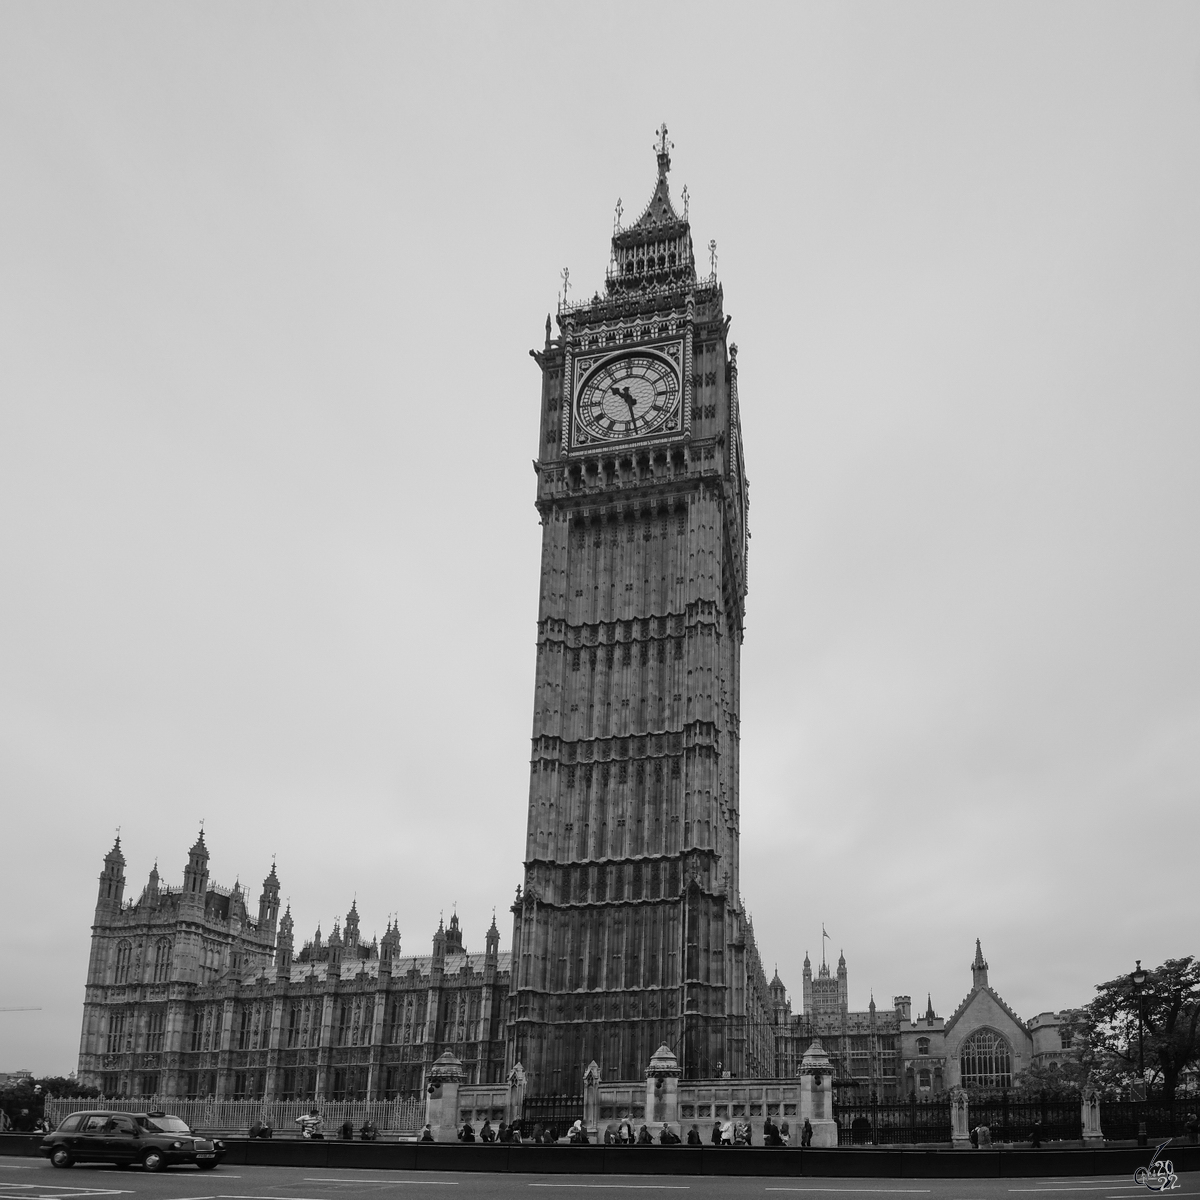 Der Westminster Palast mit dem berhmten Uhrenturm  Big Ben  im Zentrum von London. (September 2013)